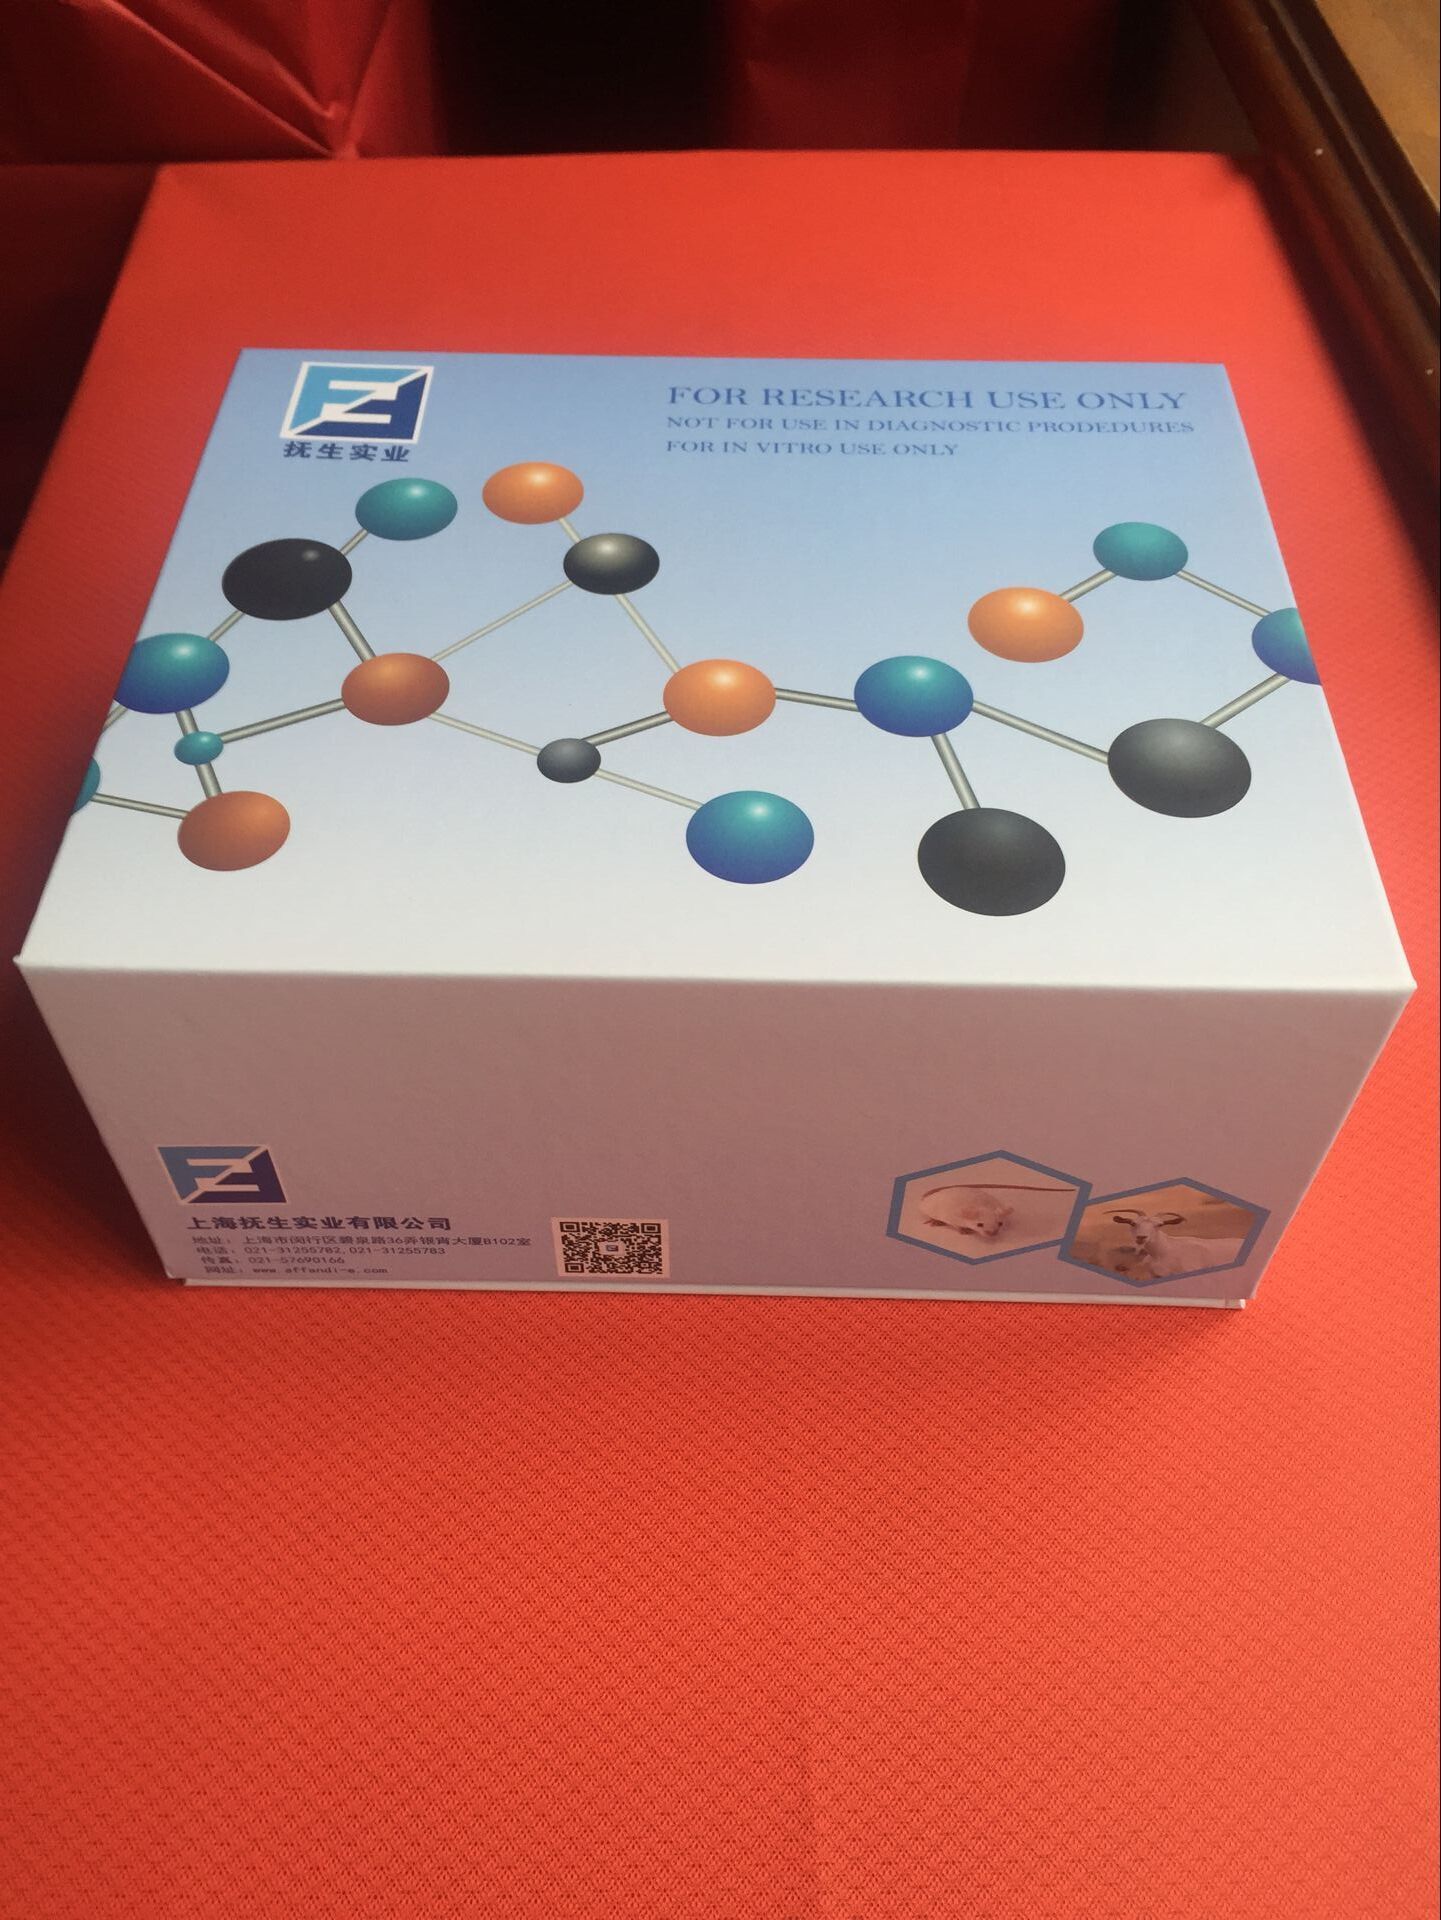 山羊催乳素(PRL)elisa检测试剂盒说明书